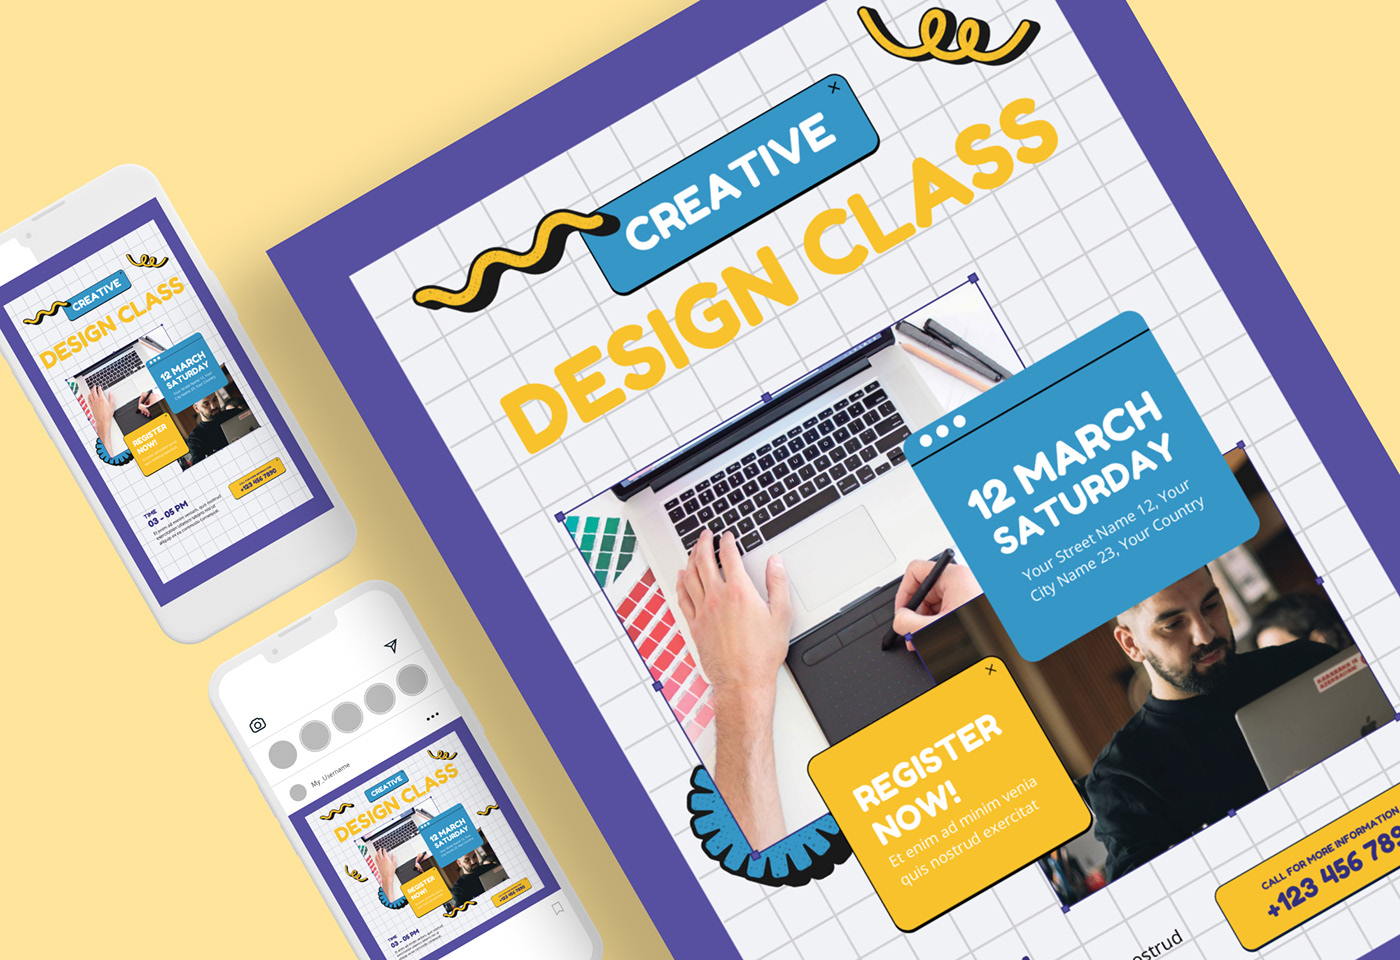 webinar Online course flyer design class